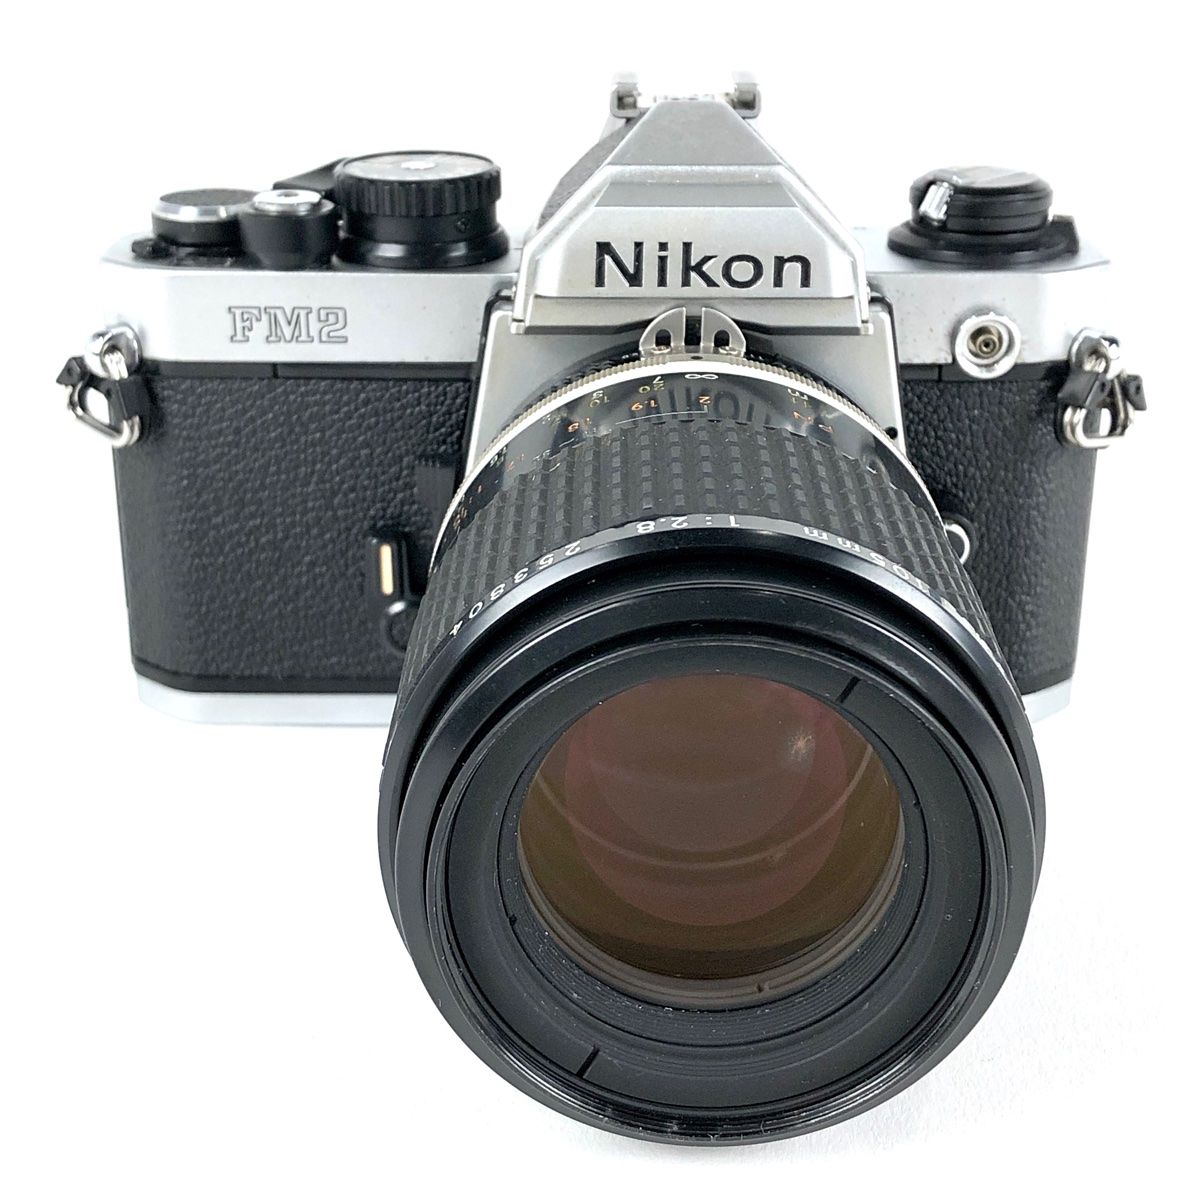 ニコン Nikon NEW FM2 シルバー + Ai-S MICRO NIKKOR 105mm F2.8 マクロ フィルム マニュアルフォーカス  一眼レフカメラ 【中古】